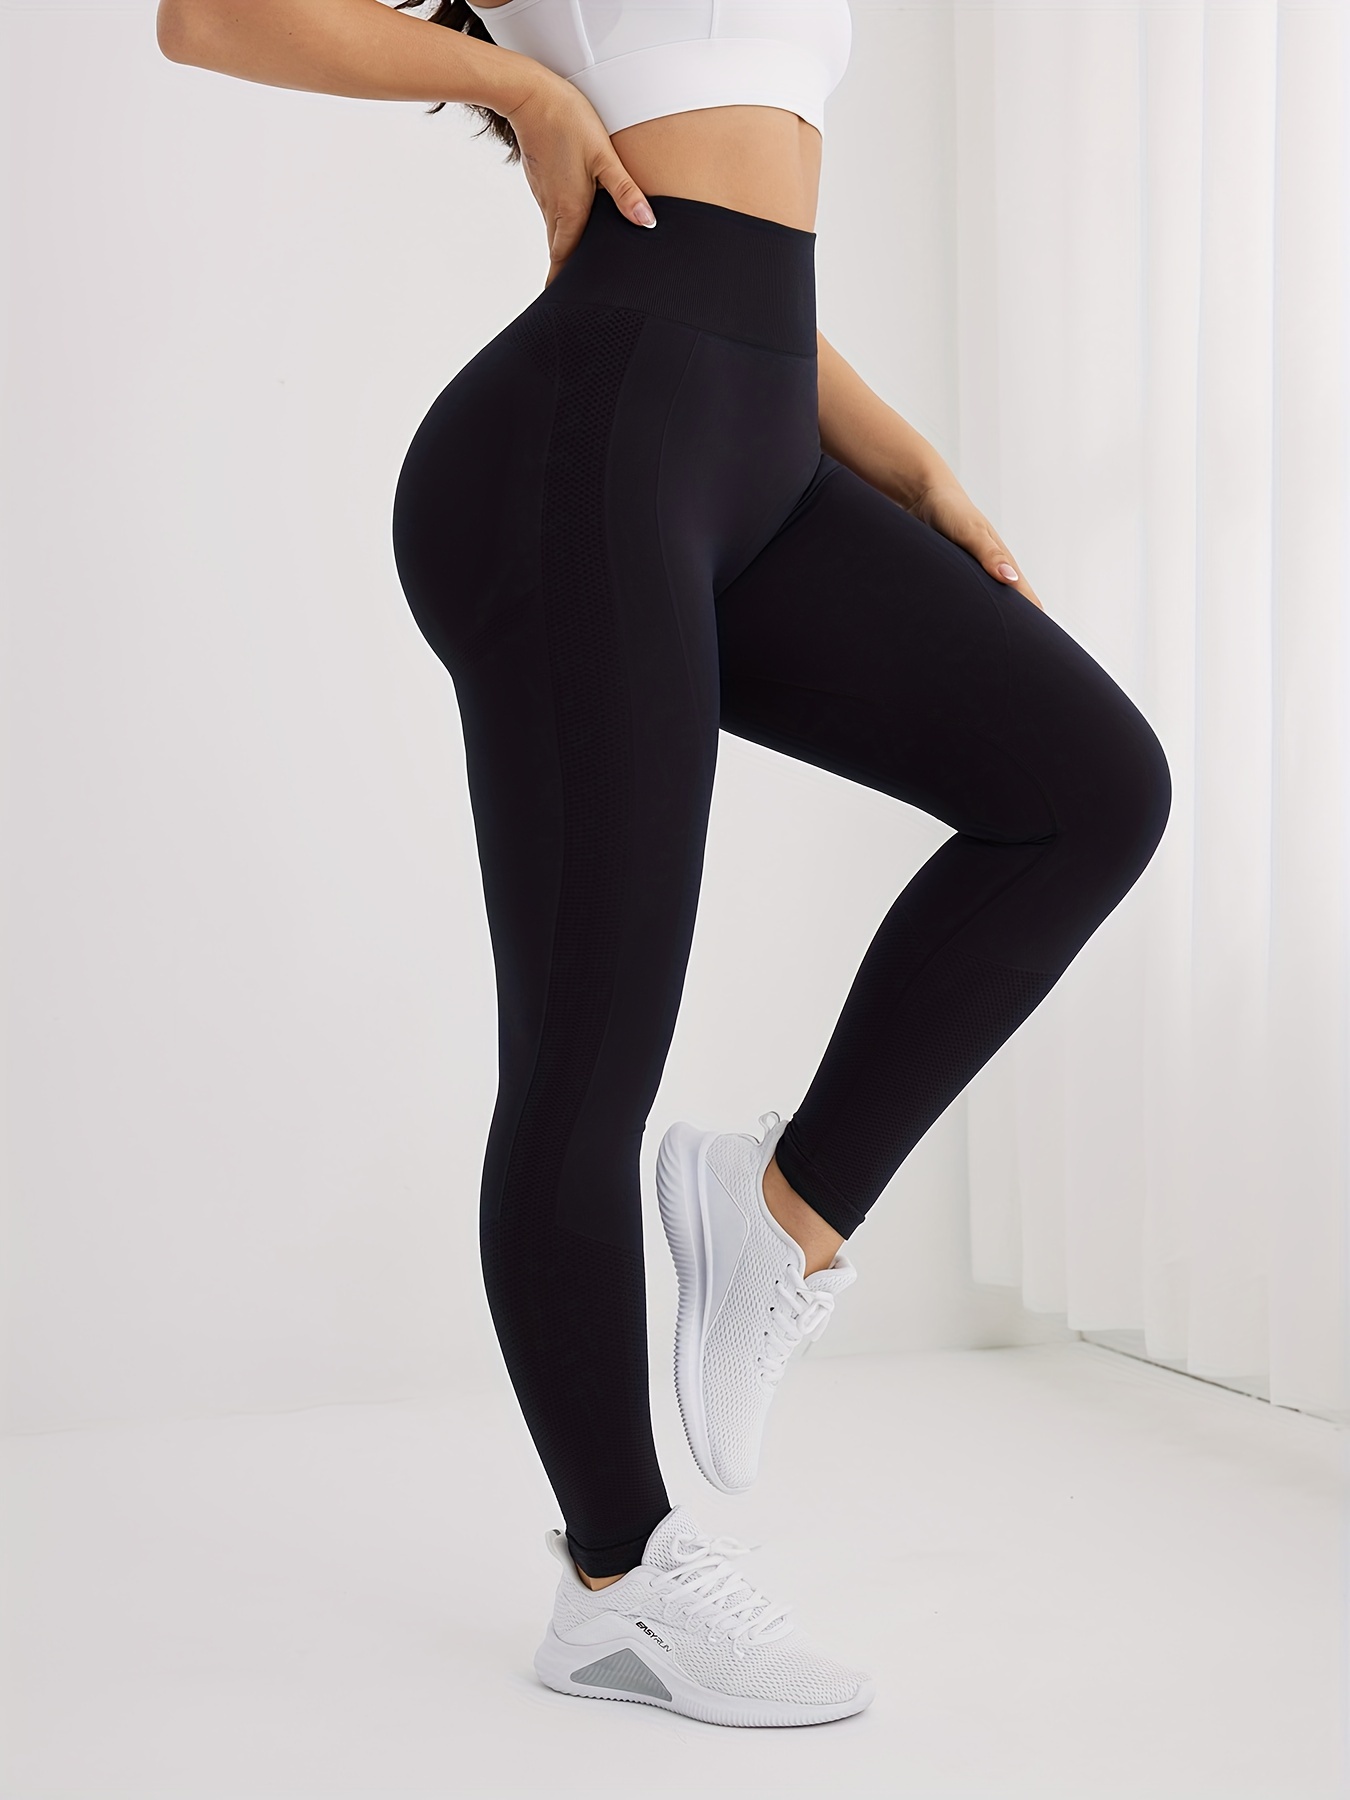 Women's wrinkled butt lifted high waist yoga pants leggings